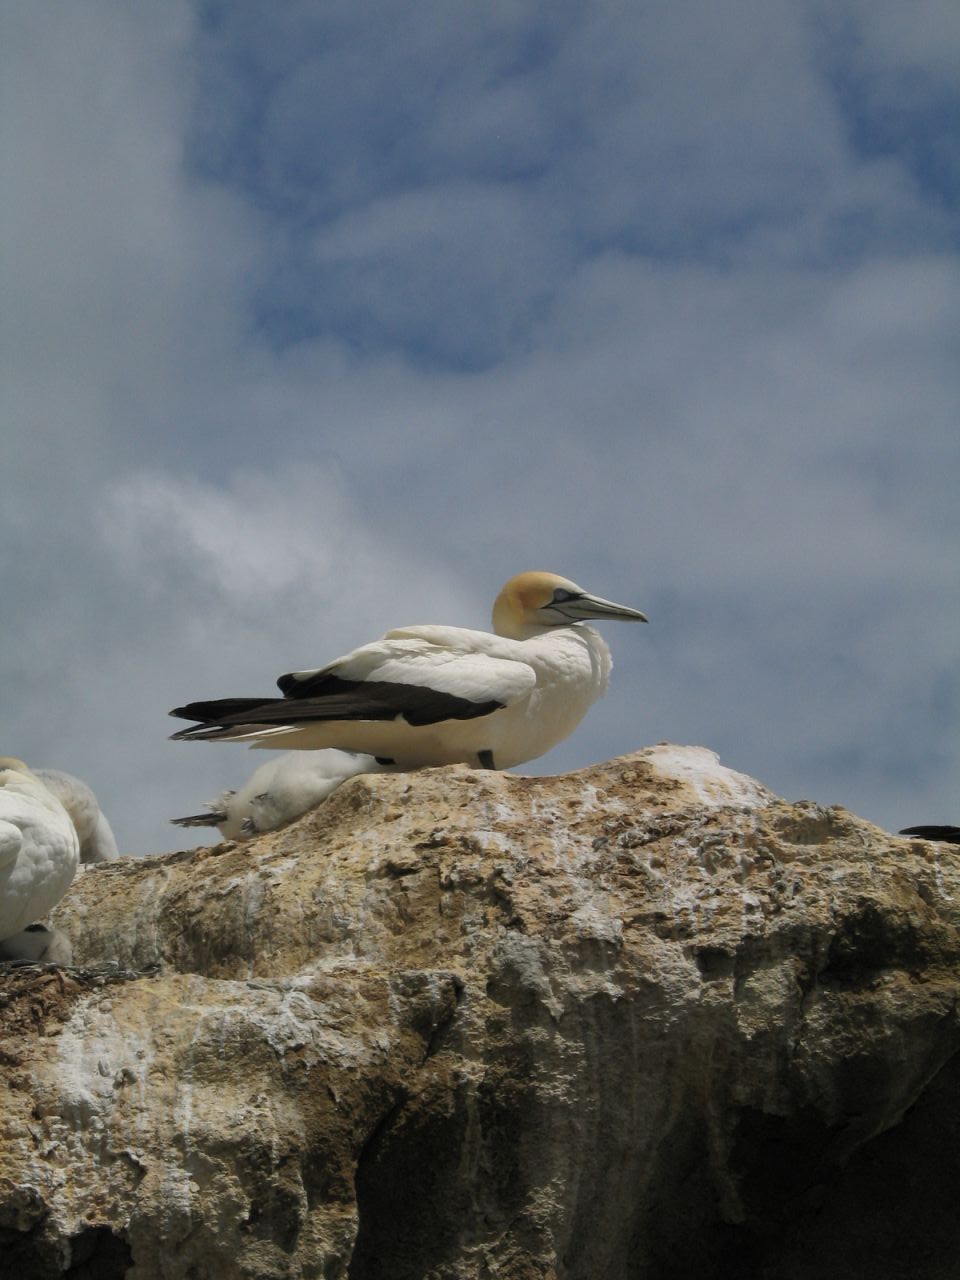 fotka / image hlavni atrakce - gannet neboli terej australsky, New Zealand